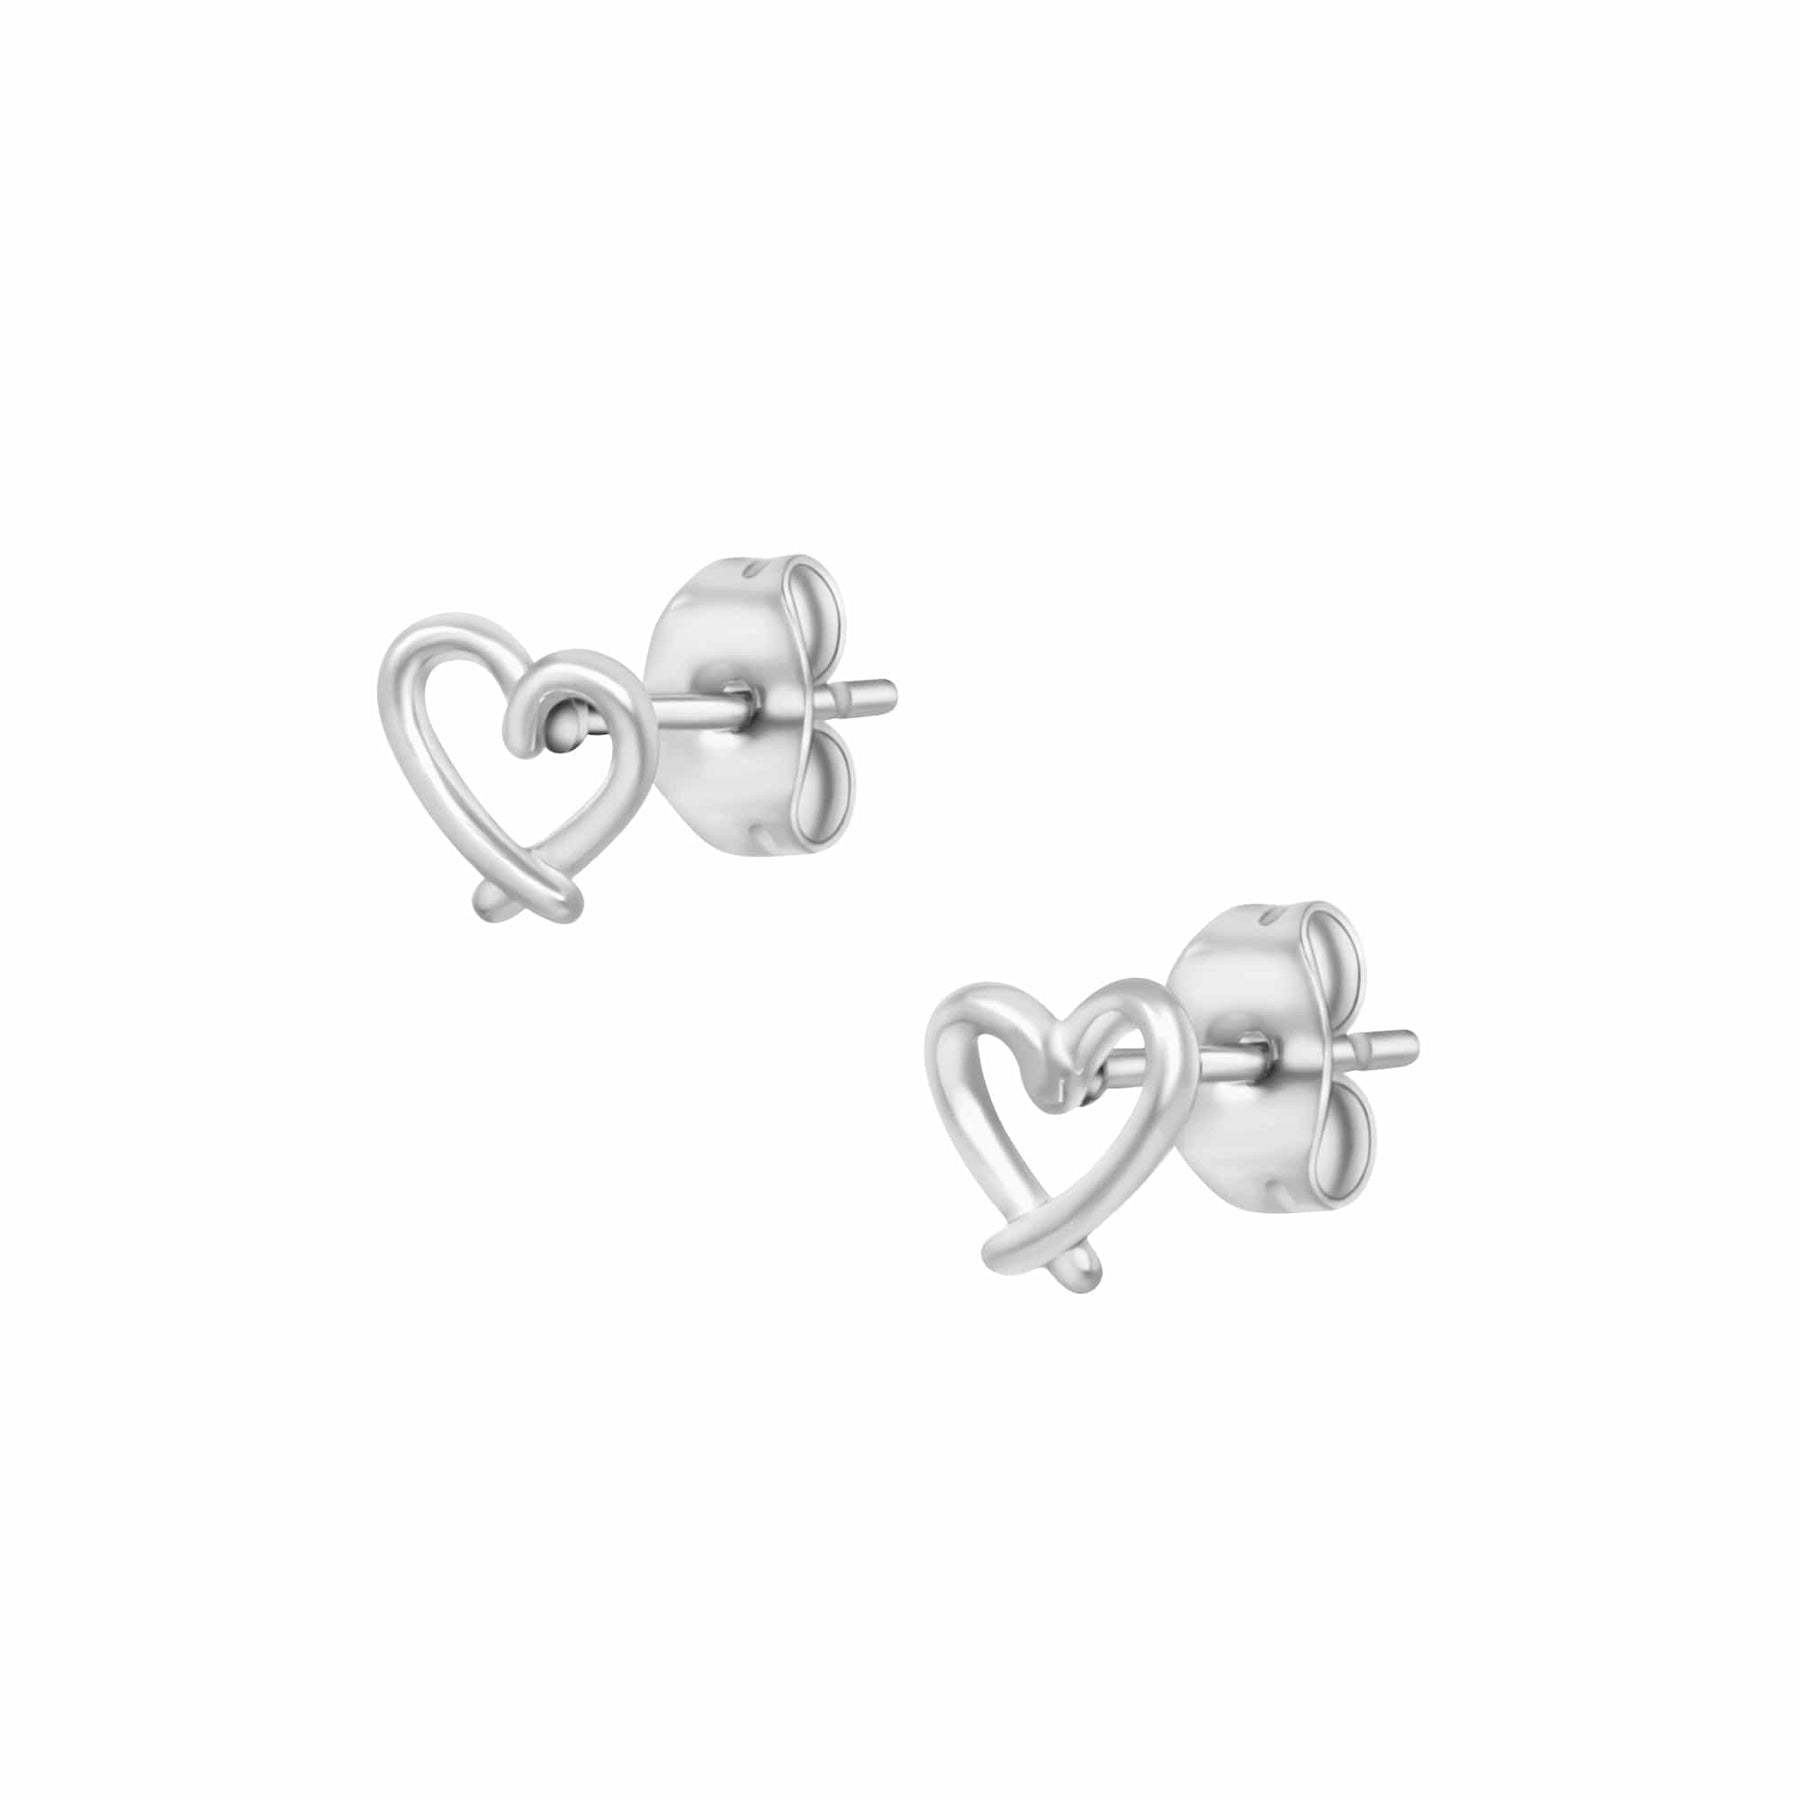 BohoMoon Stainless Steel Adorn Stud Earrings Silver